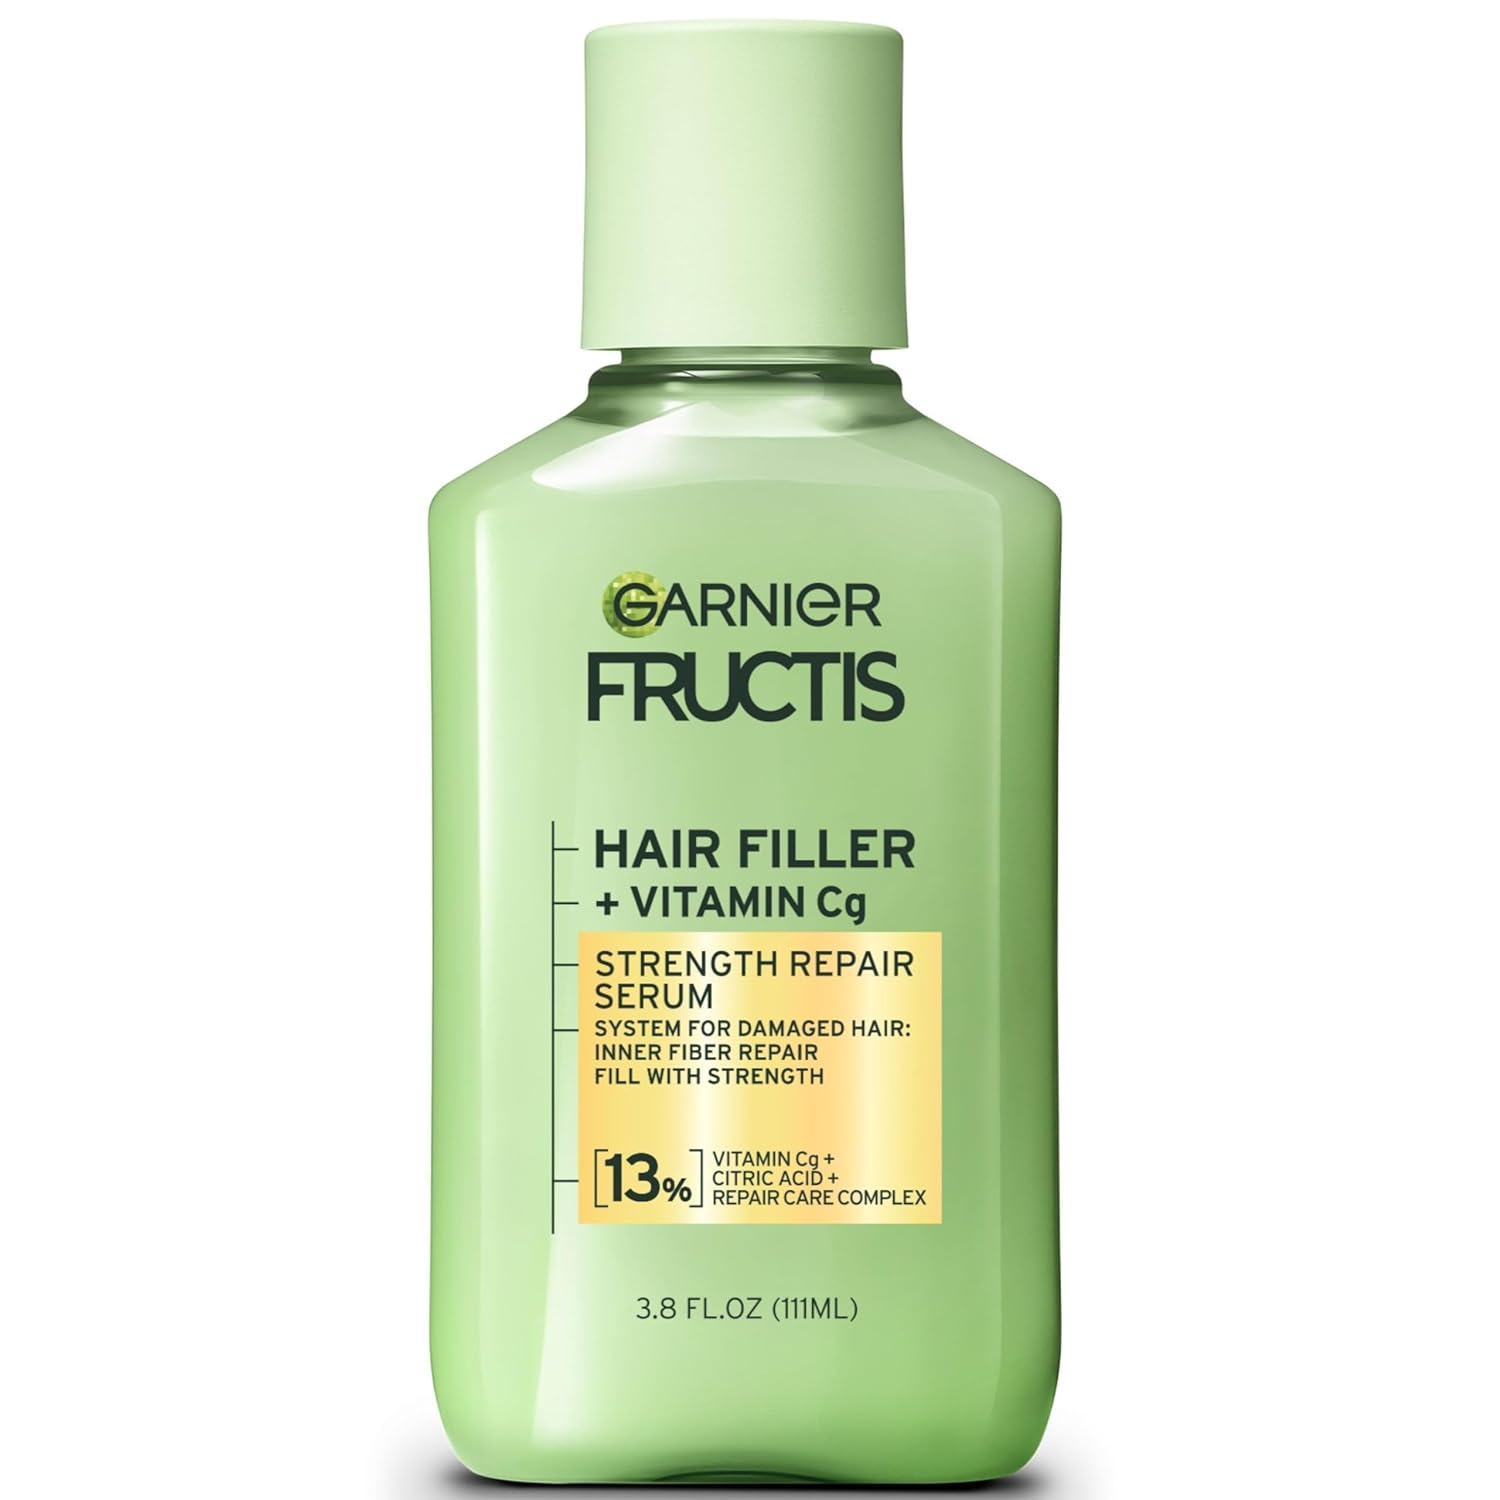 Garnier Fructis Hair Filler Strength Repair Serum with Vitamin Cg, 3.8 FL OZ, 1 Count